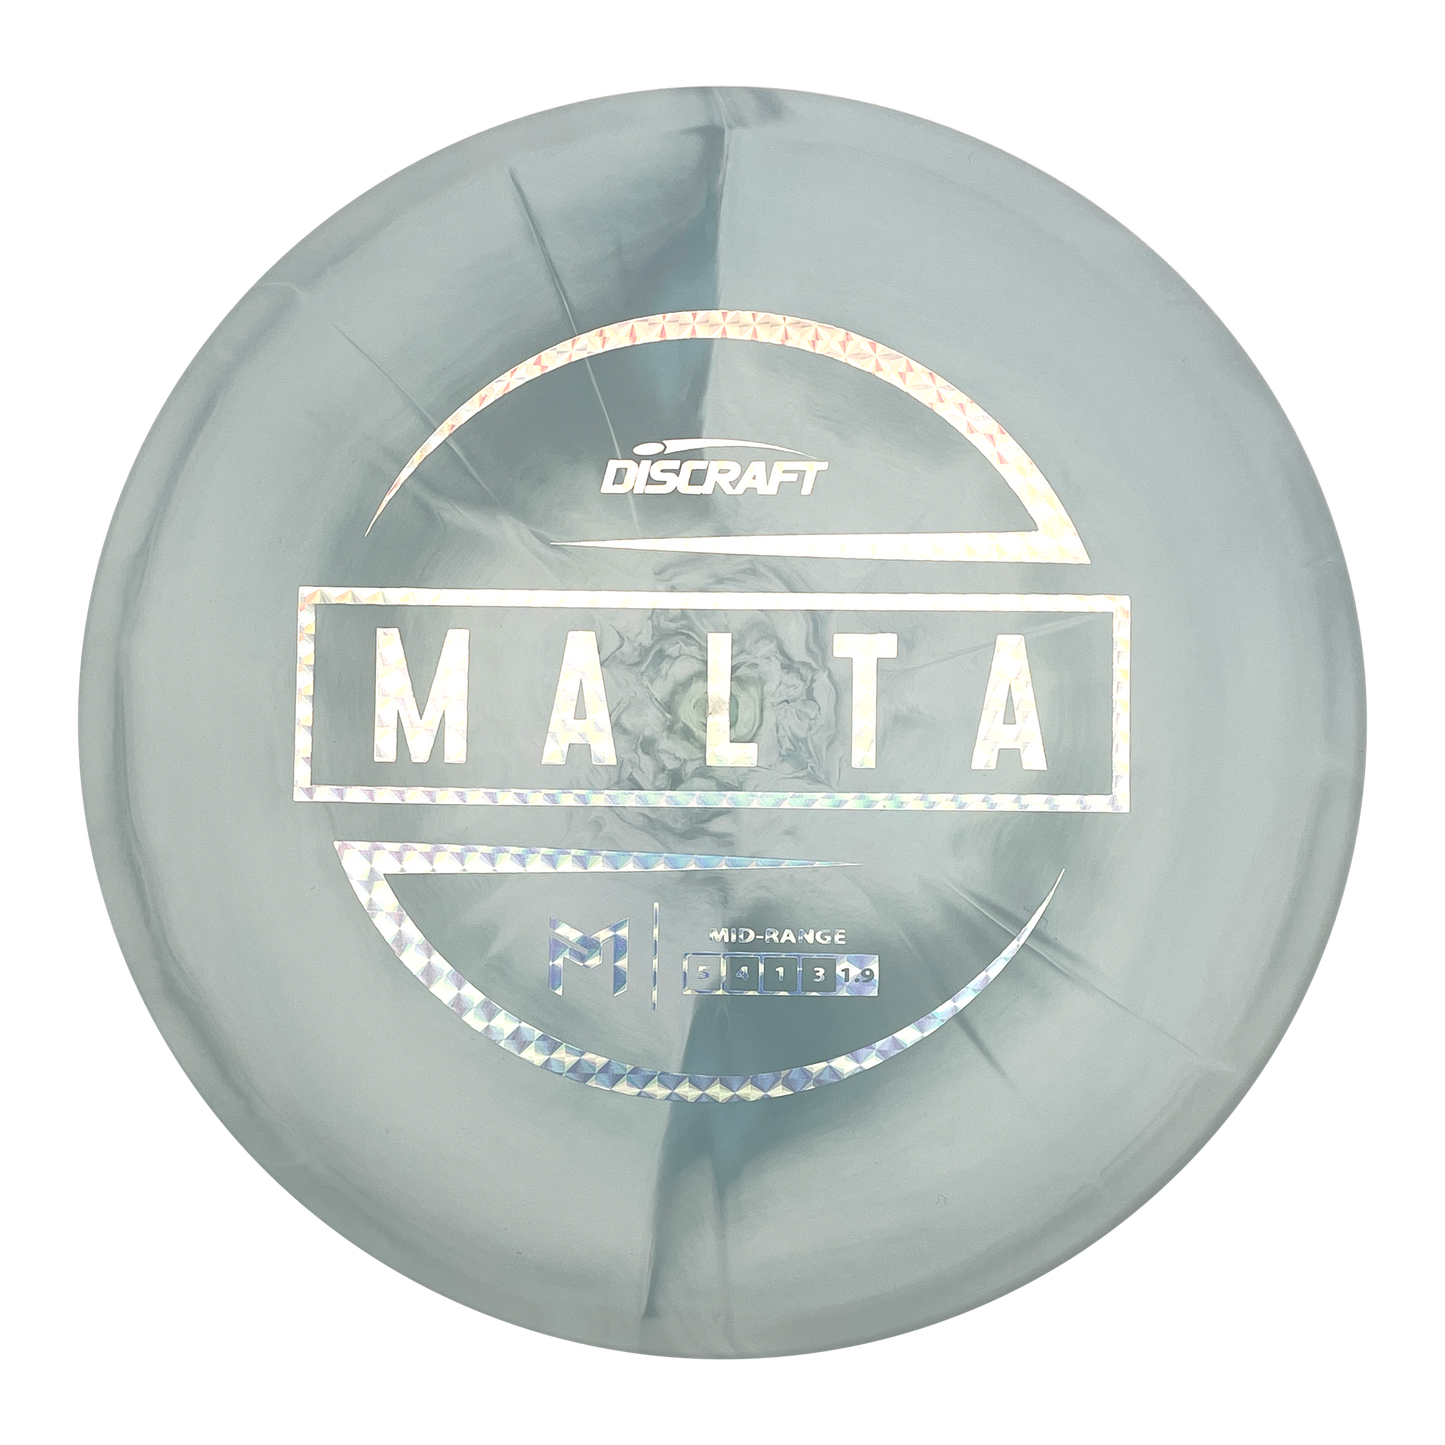 Discraft Malta - Paul McBeth - ESP Line - Light Blue